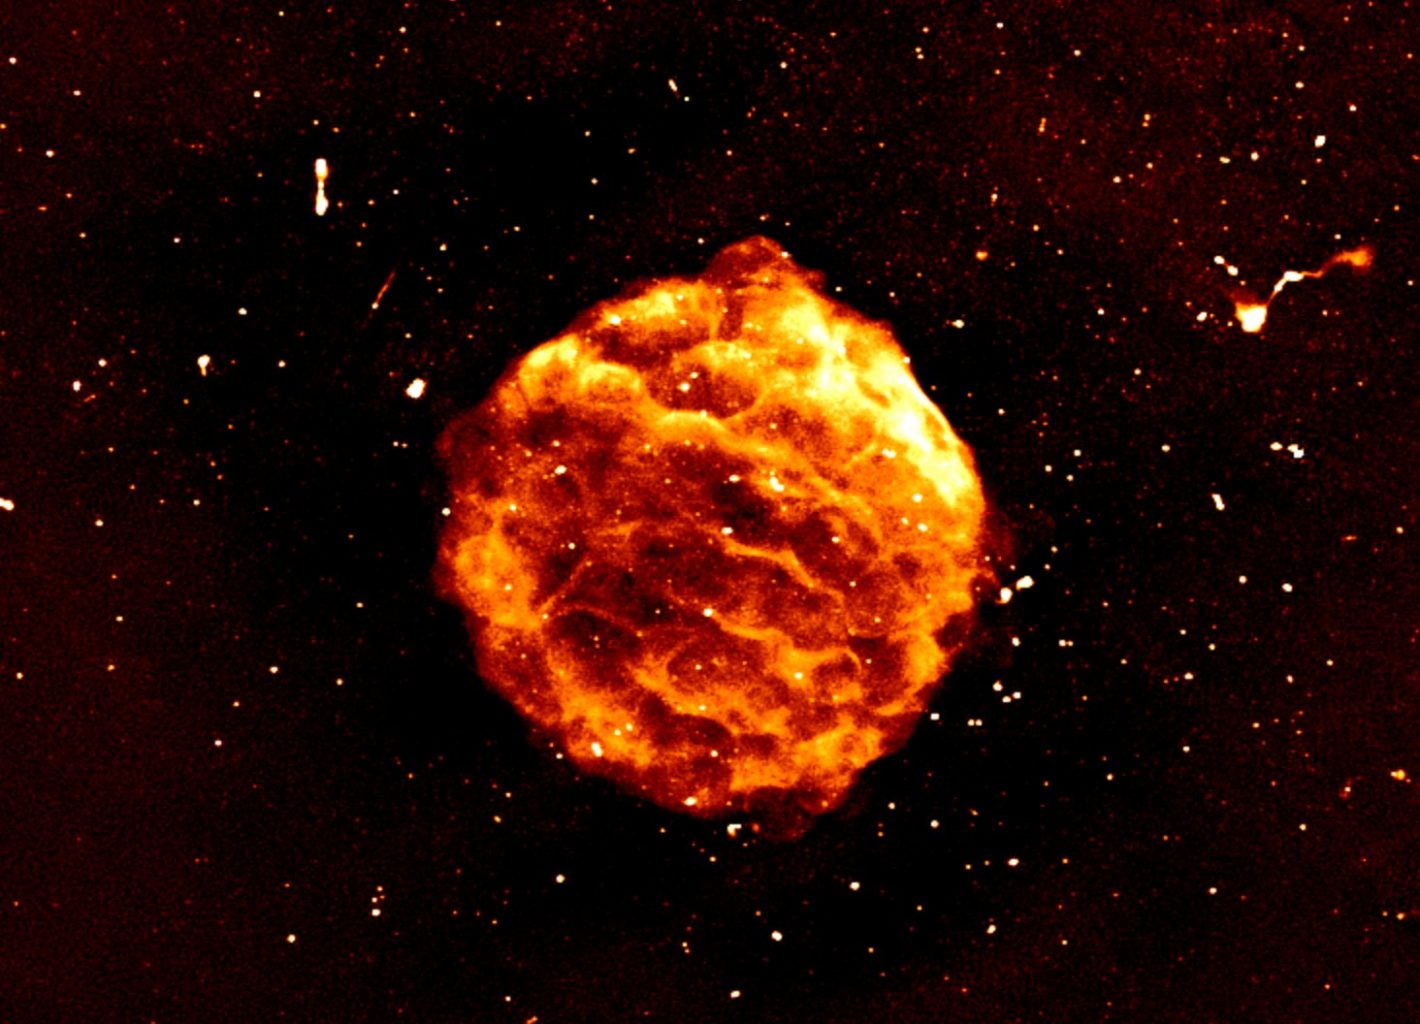 Ostaci supernove. Izvor: Curiosmos.com.